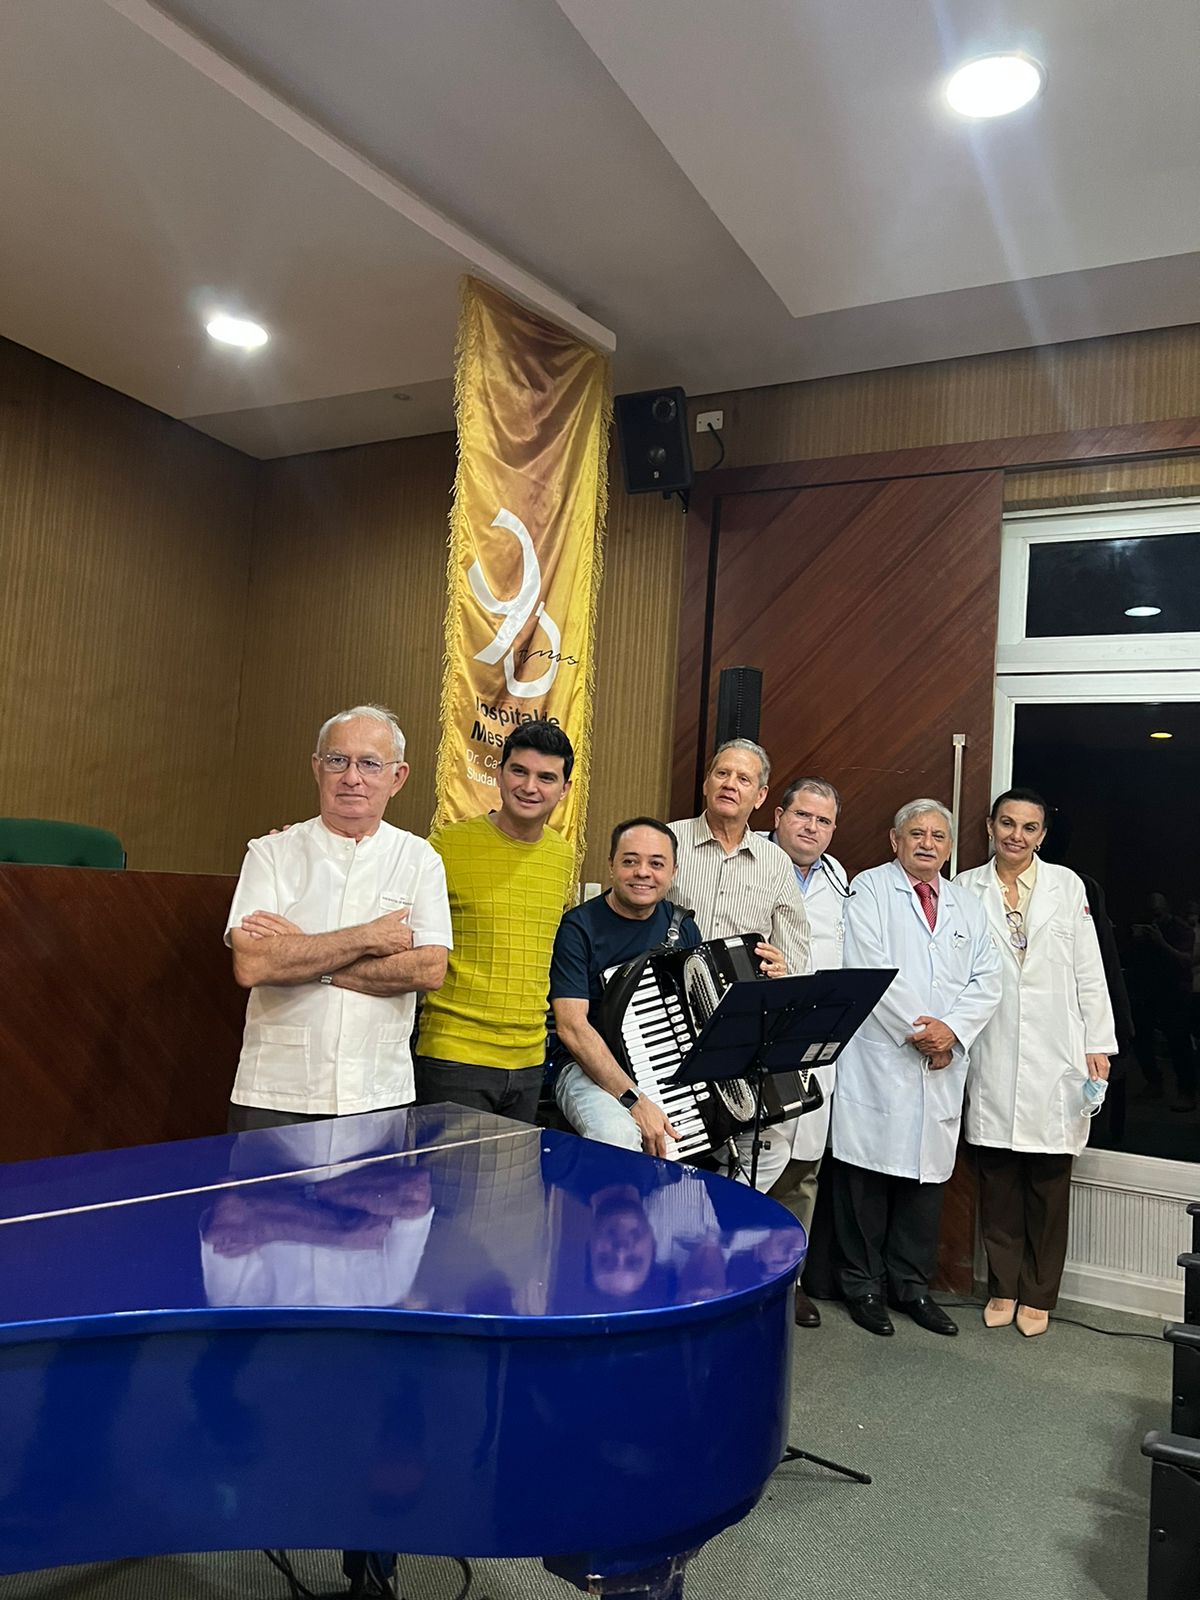 Paulo Rodrigo Pianista e Dr. Oswaldo da Sanfona realizam homenagem aos 90 anos do Hospital de Messejana